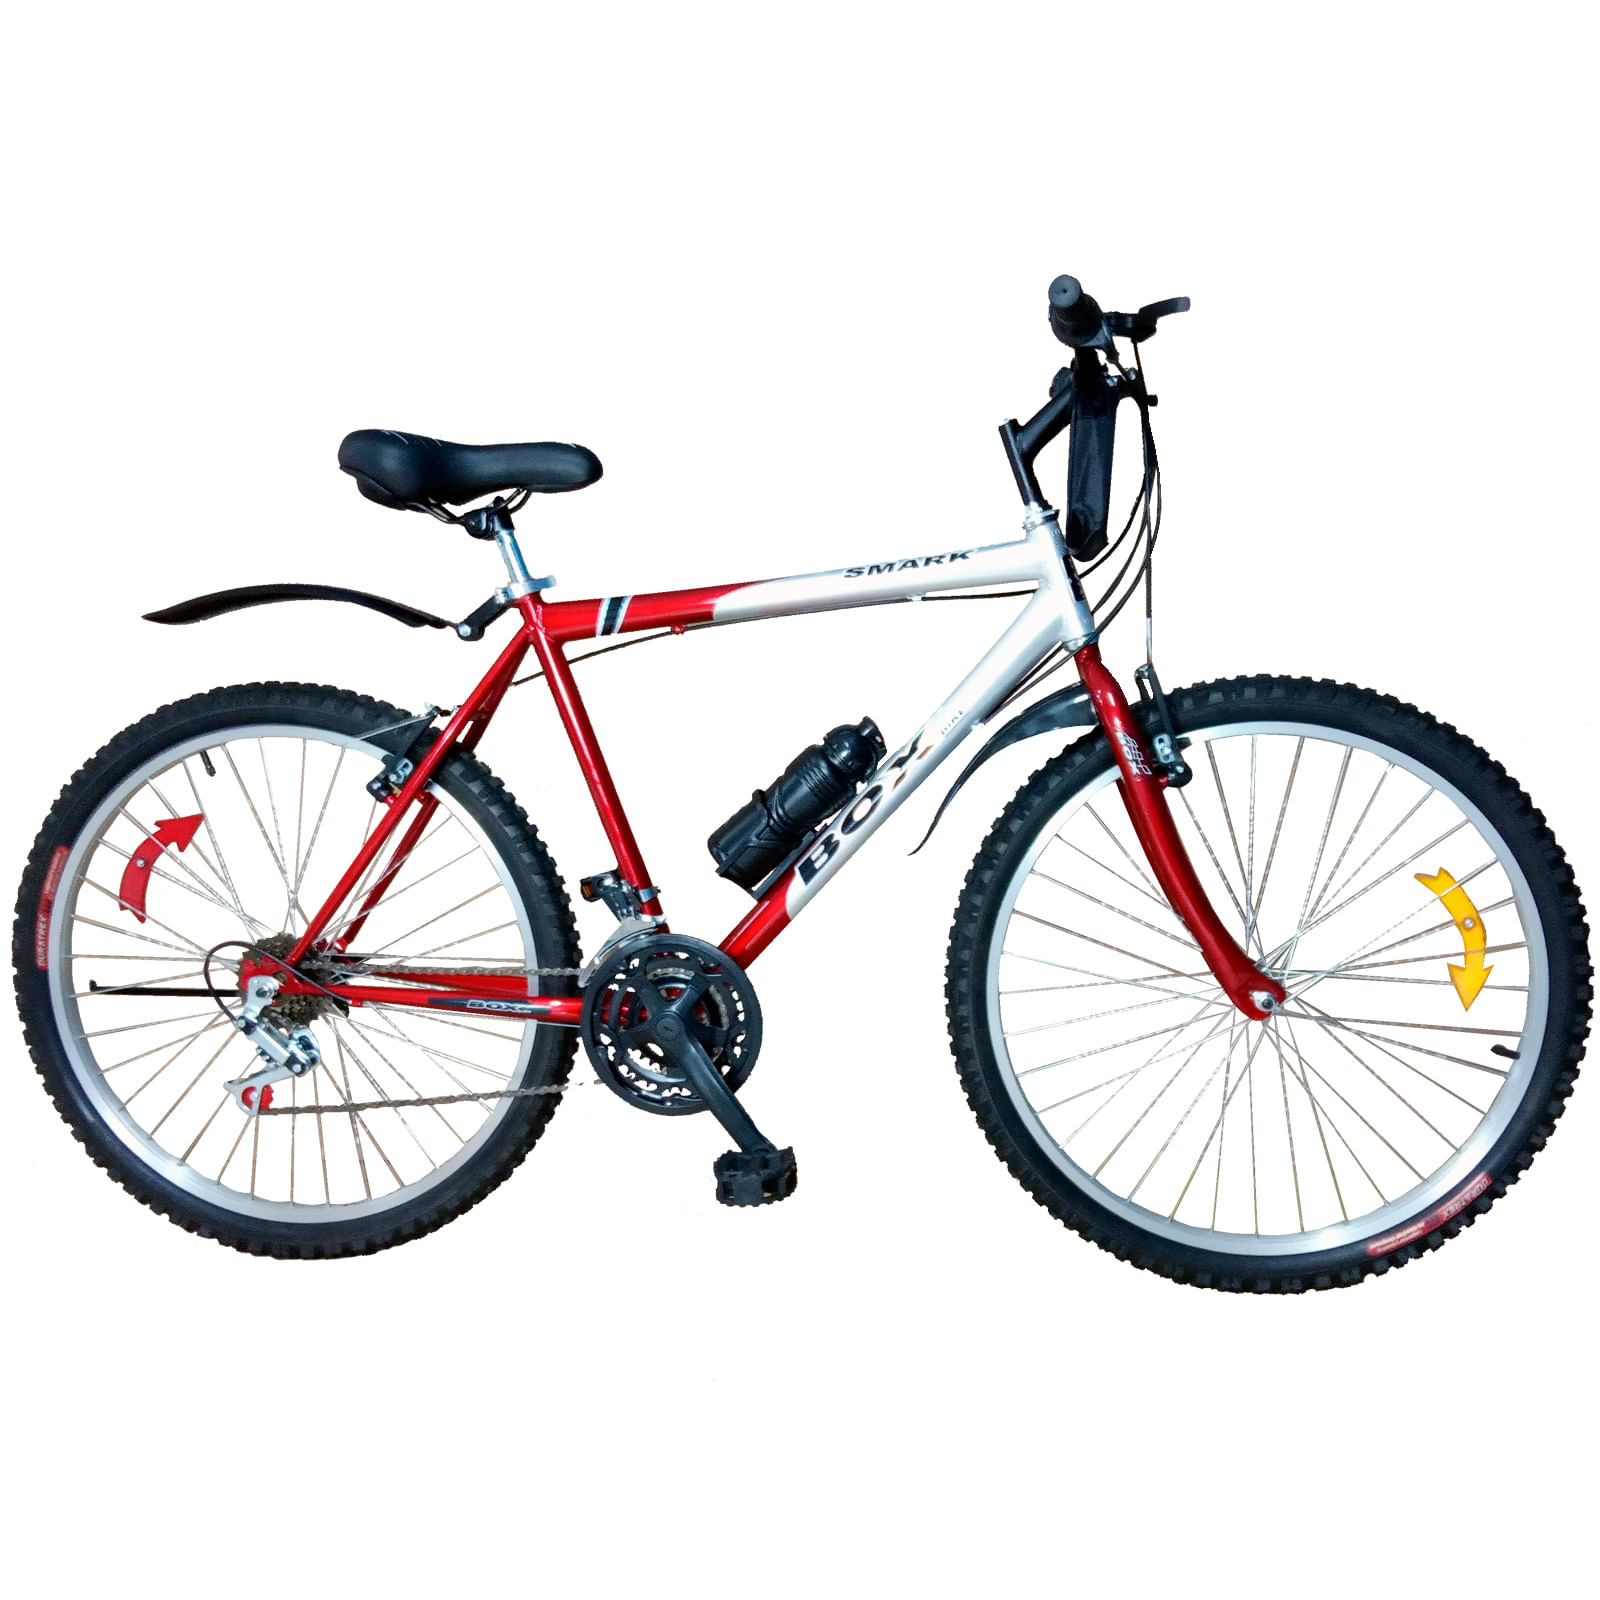 Bicicleta Box Bike Clasica Aro 26 Rojo con Plata